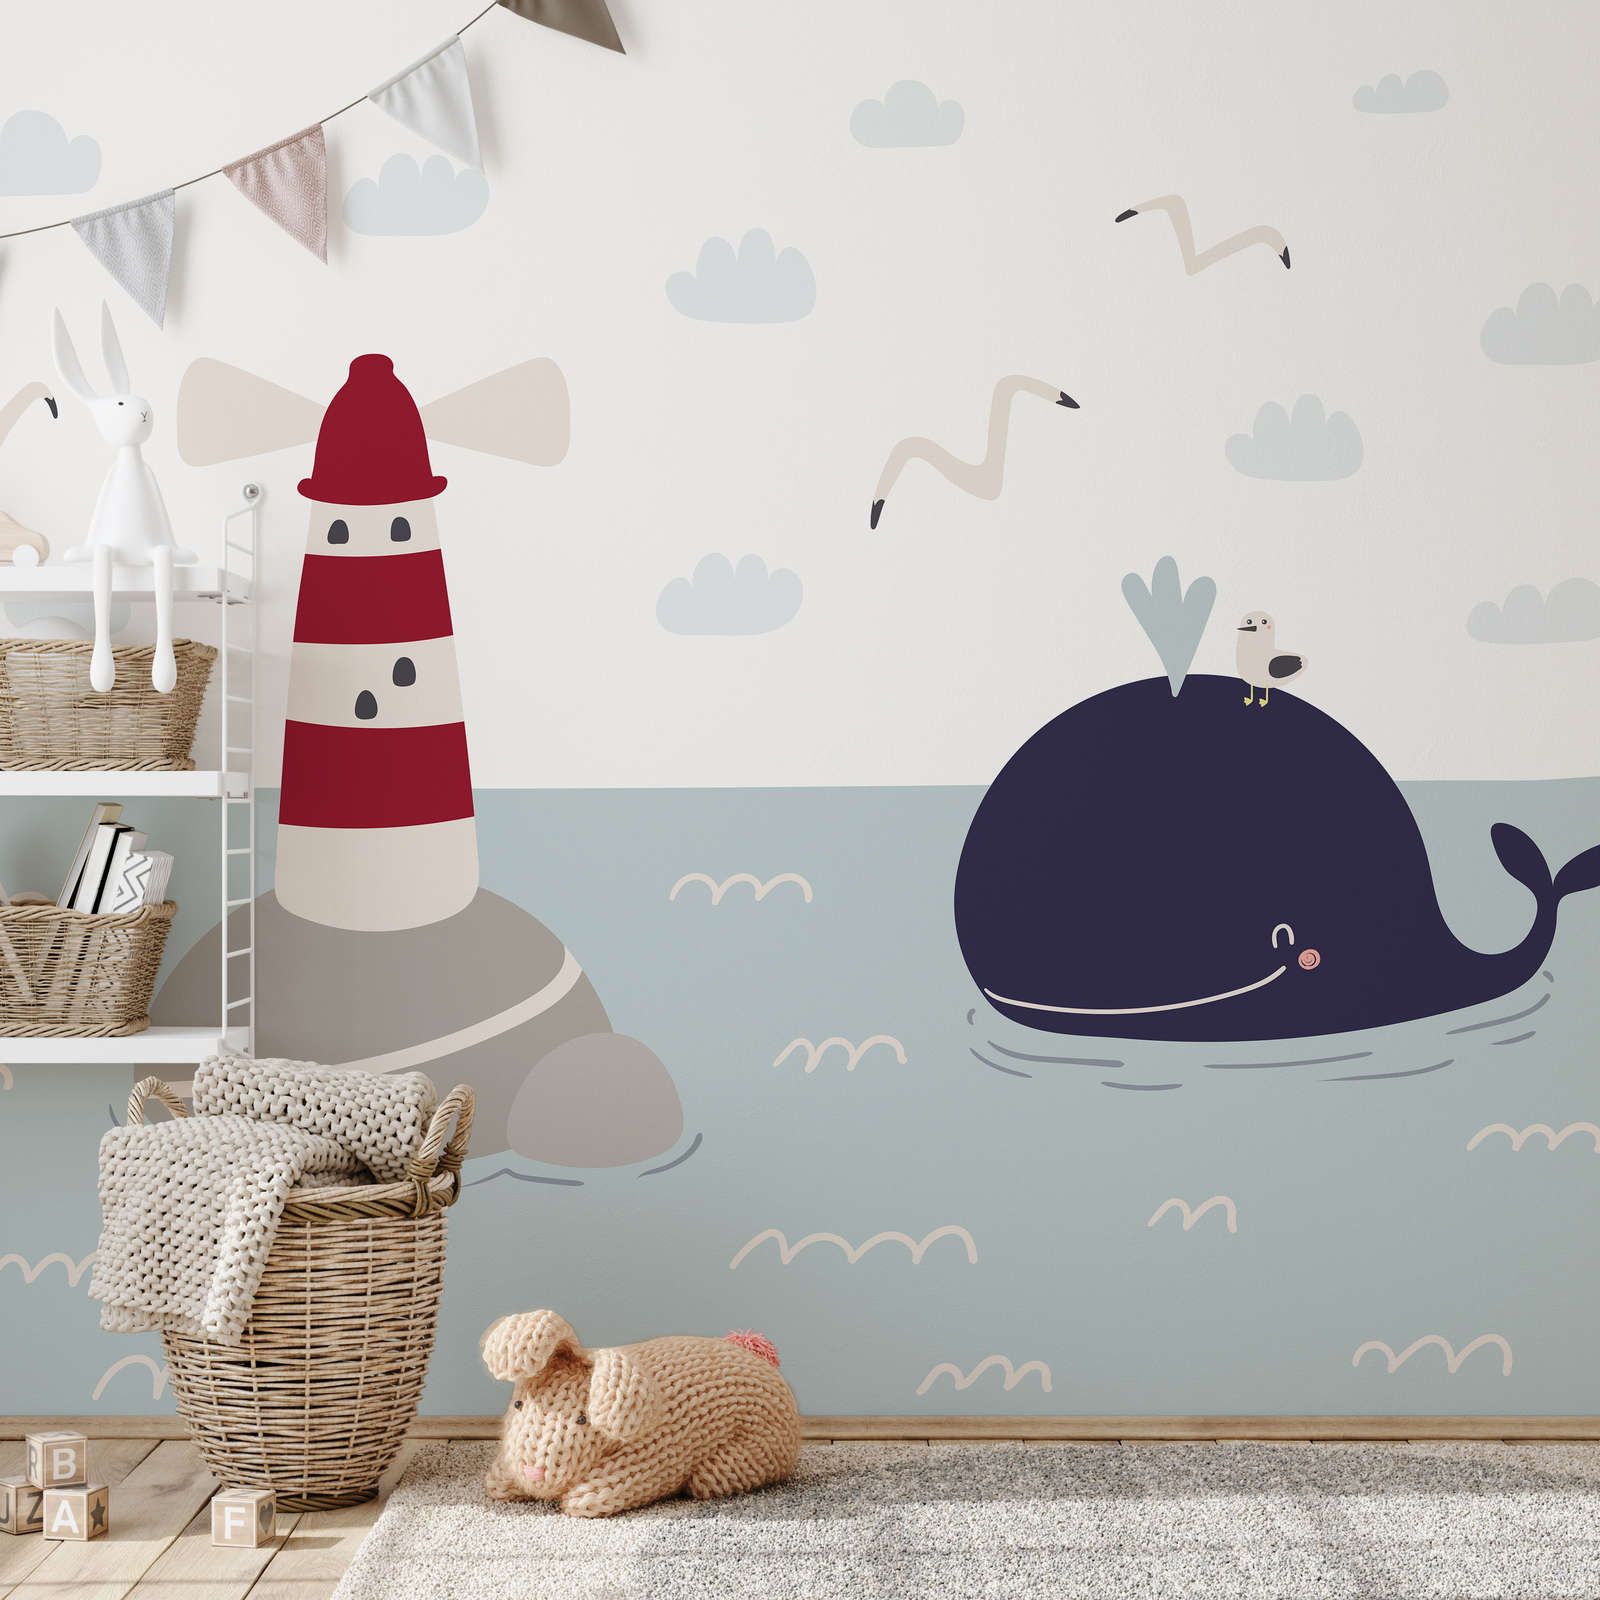             Fototapete fürs Kinderzimmer mit Leuchturm und Wal – Glattes & leicht glänzendes Vlies
        